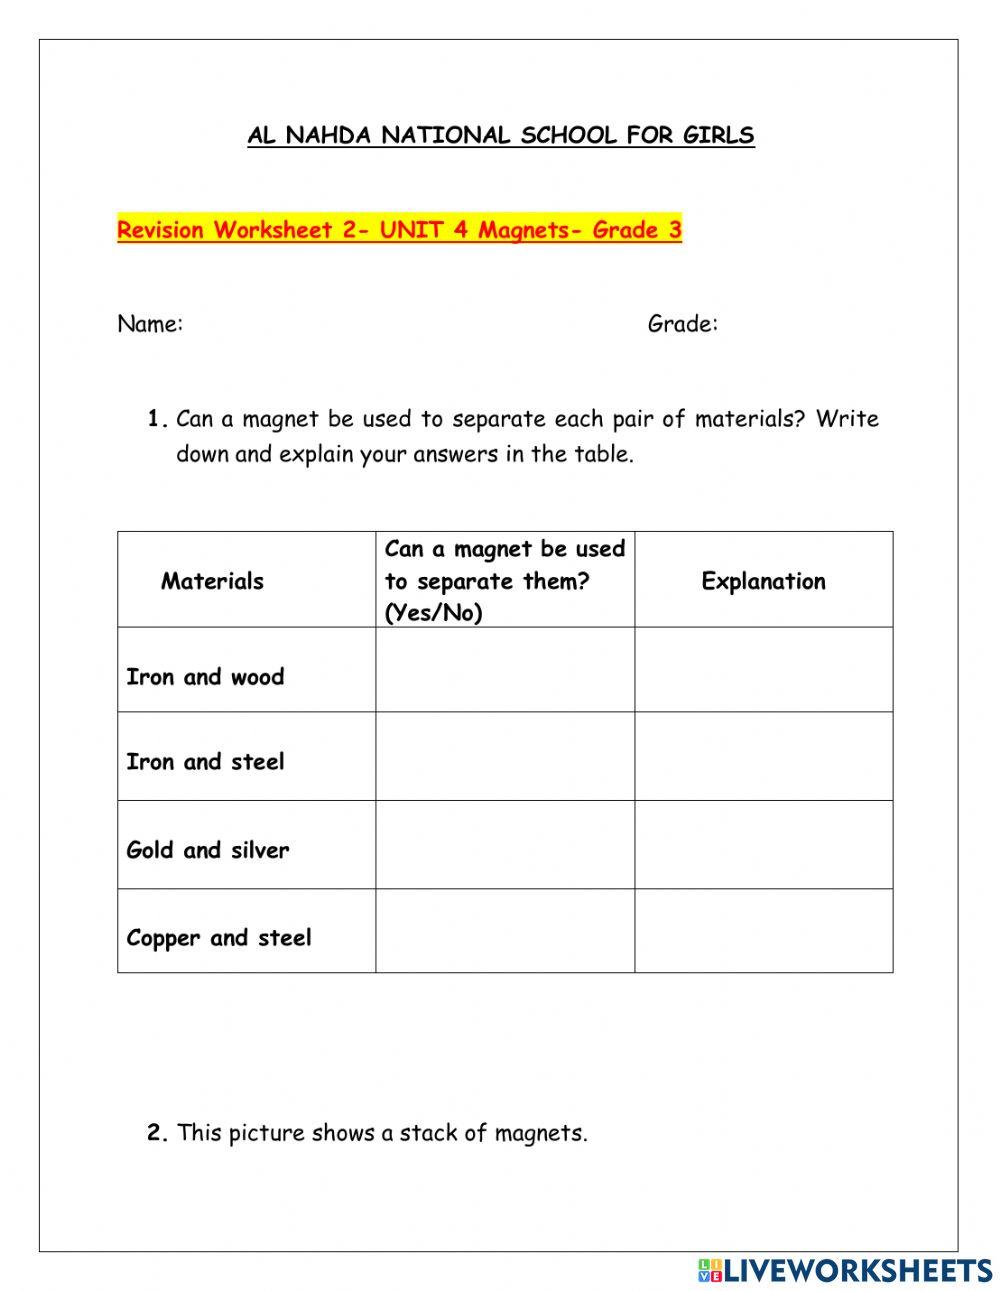 Magnet Revision Worksheet